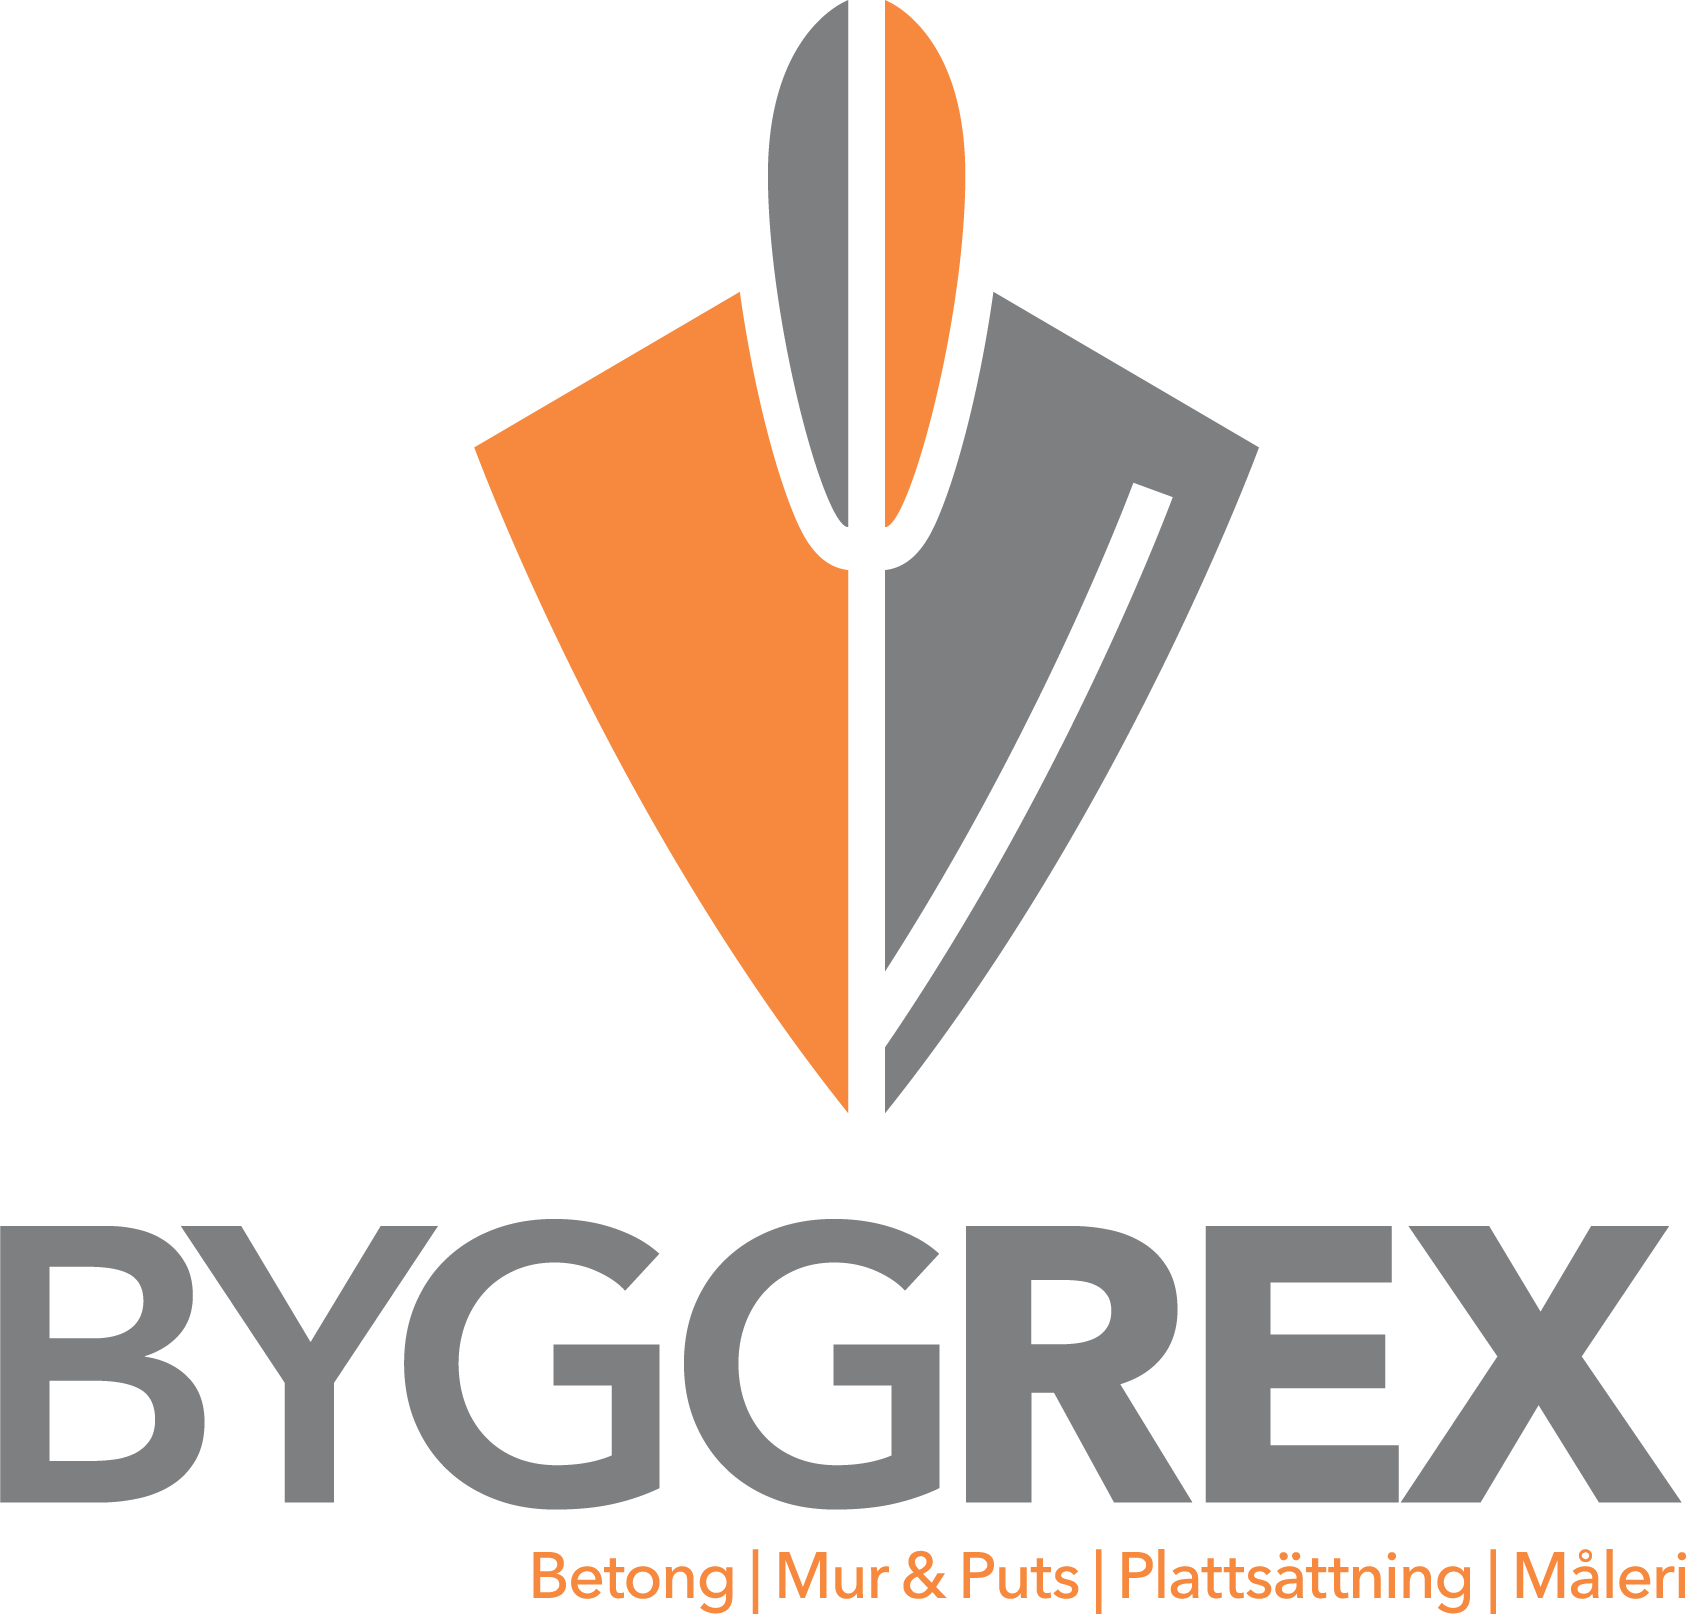 ByggRex